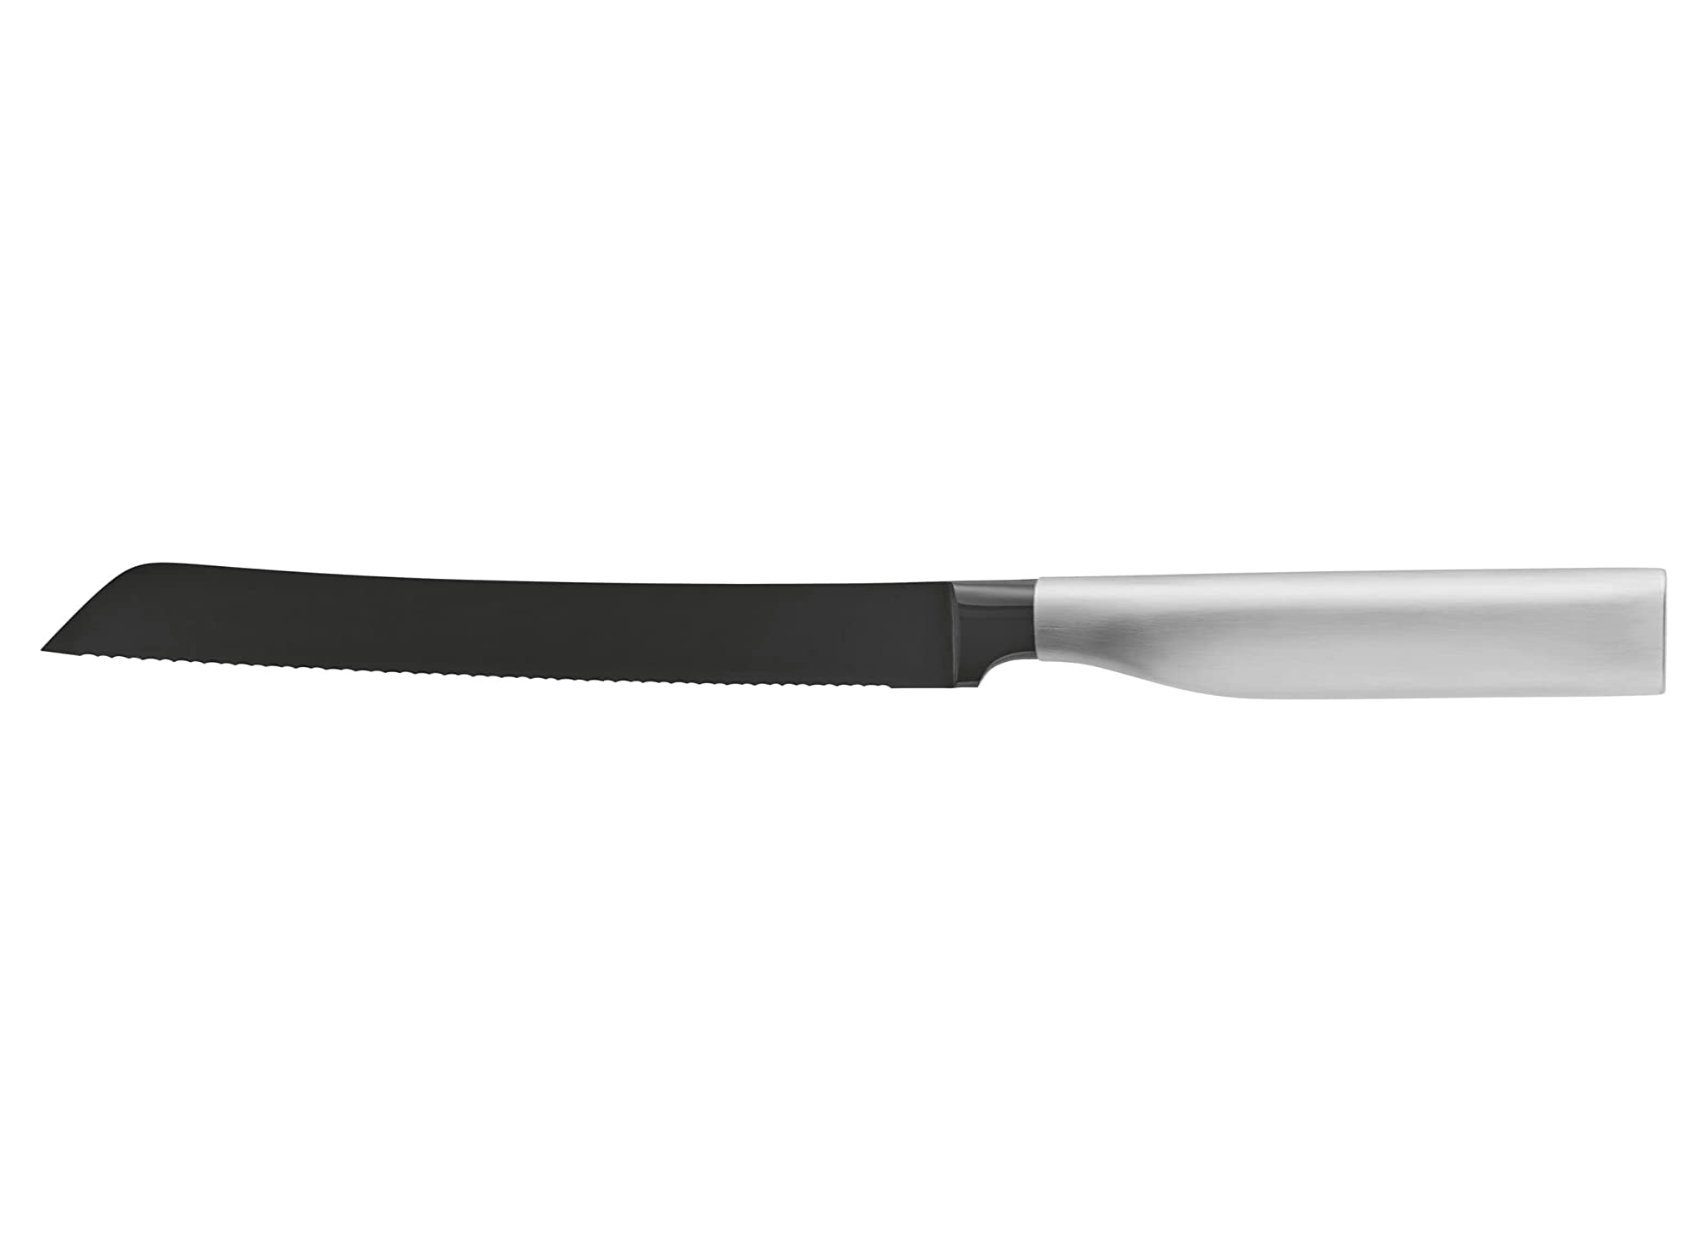 WMF Brotmesser Ultimate Black, Diamond Cut, immerwährende Schärfe, sicherer Fingerschutz